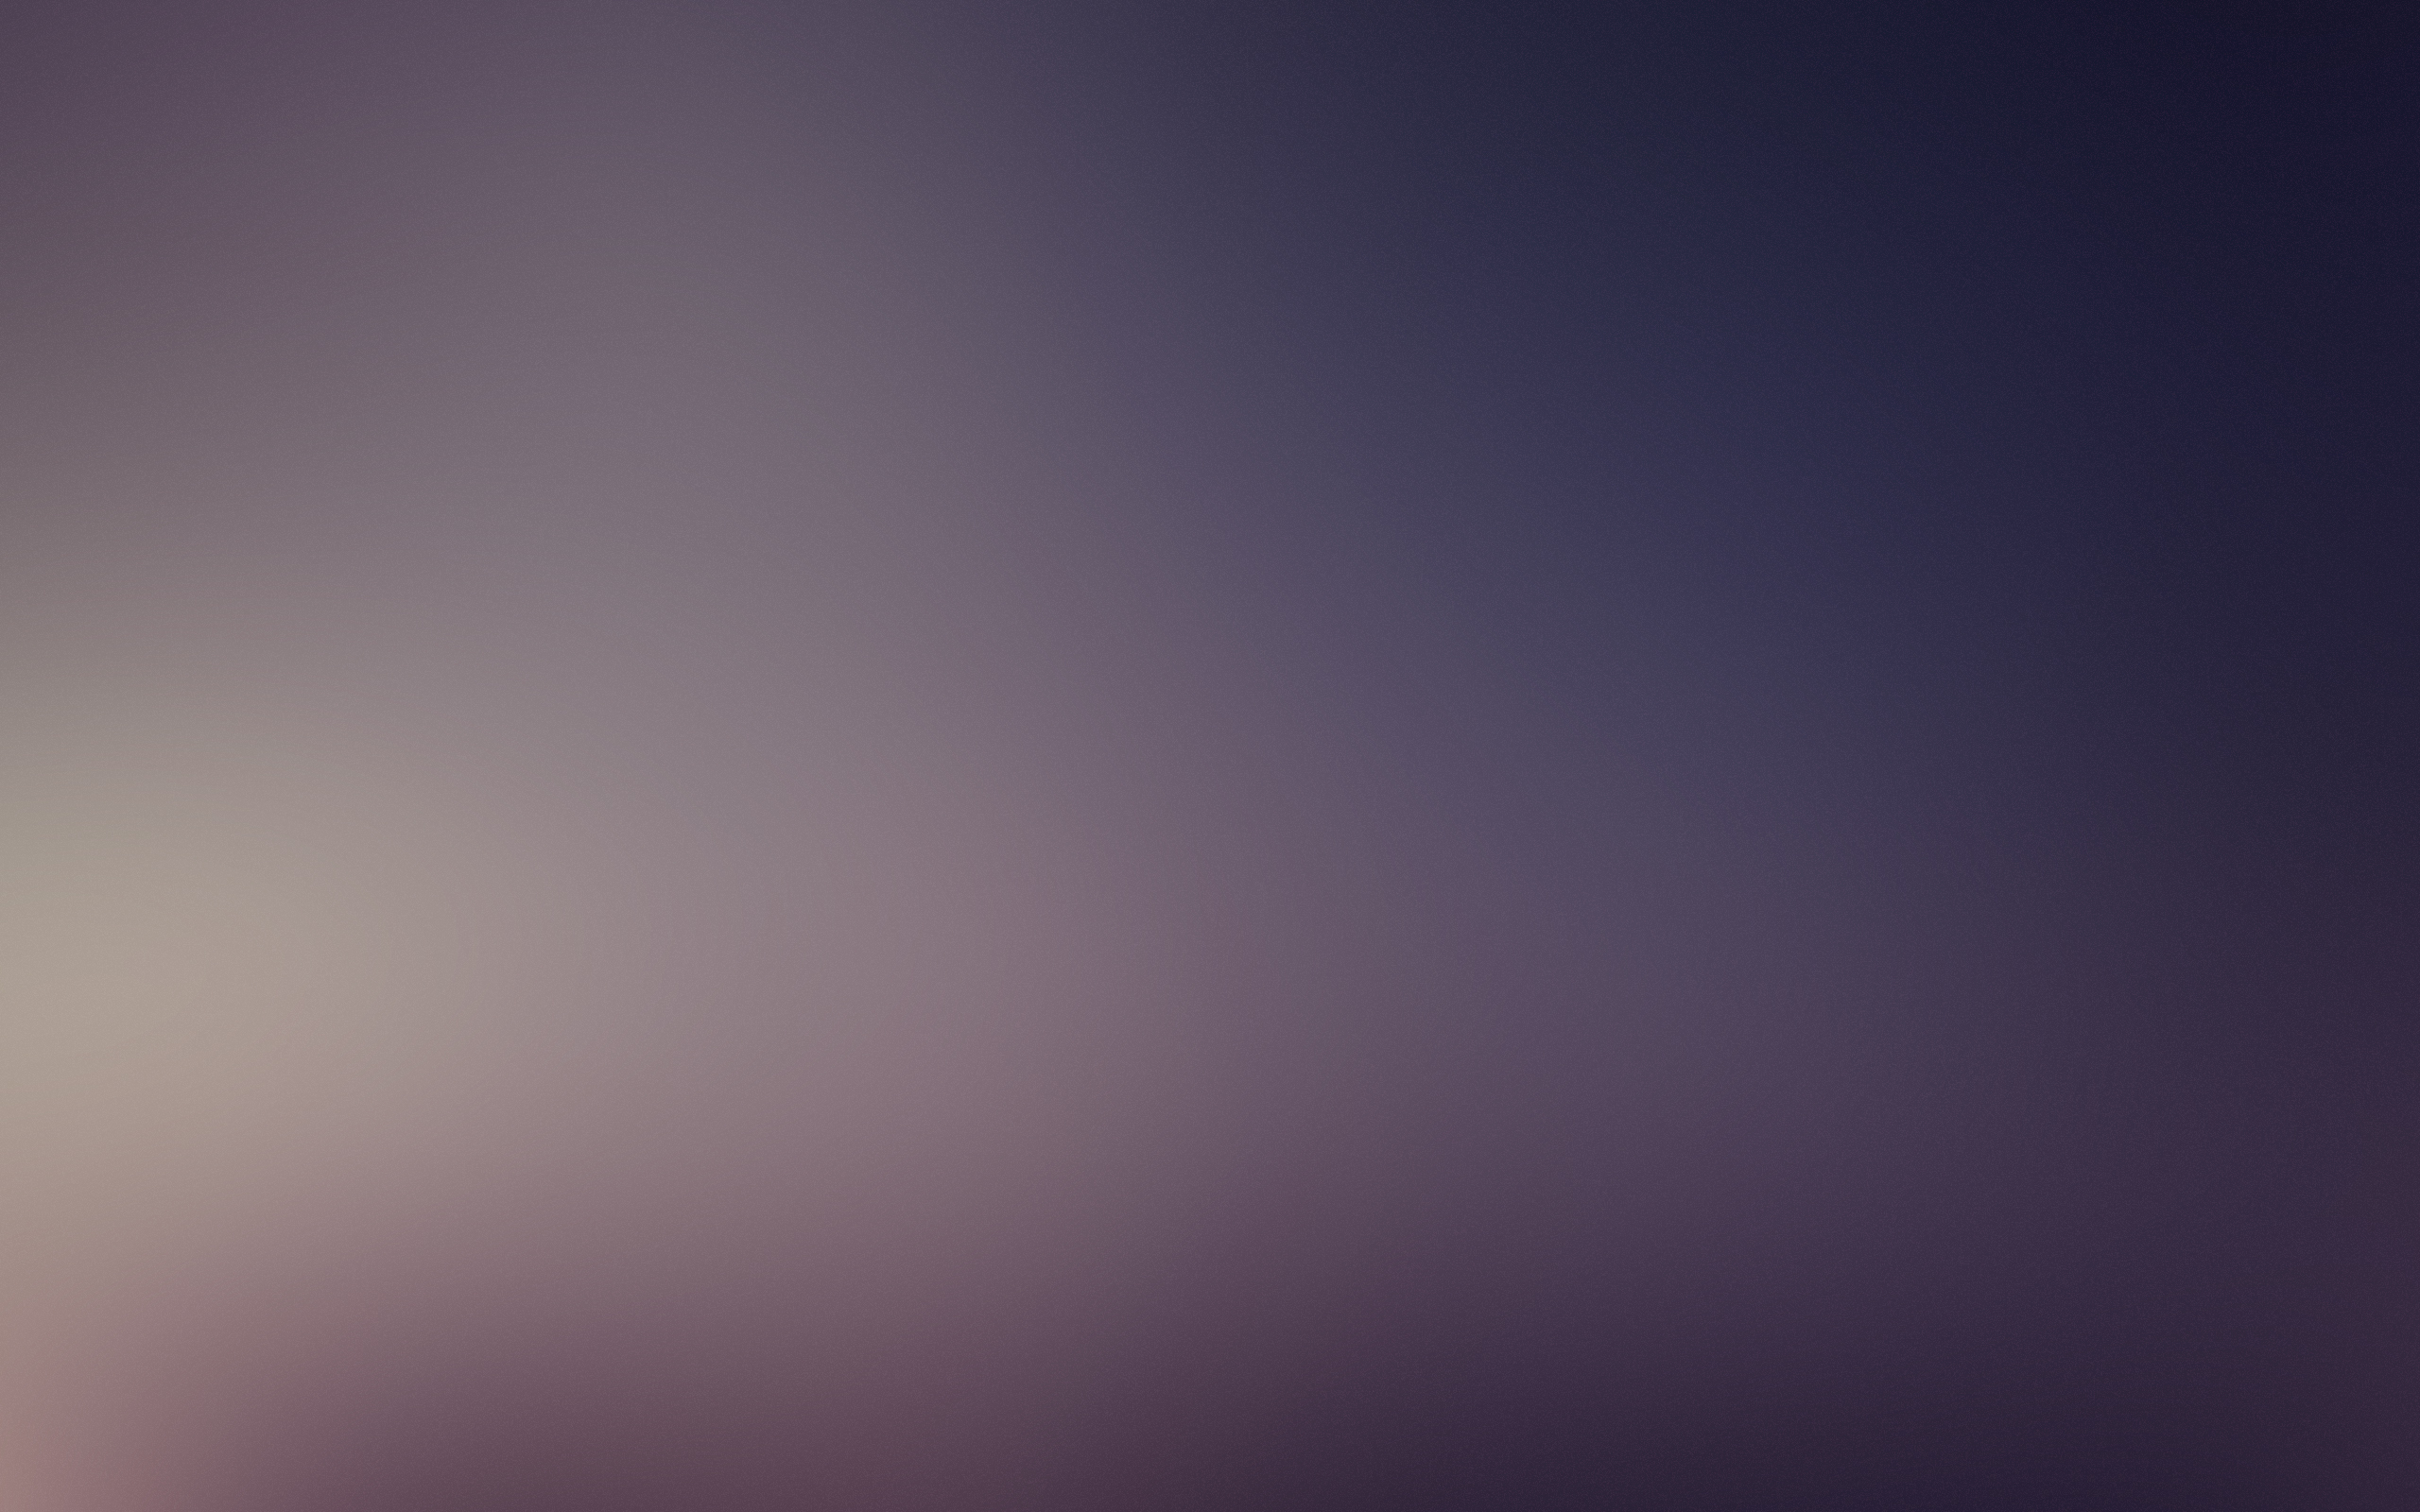 Hình nền Gradient Light Purple Background sẽ làm cho thiết bị của bạn trở nên sáng sủa và độc đáo. Việc sử dụng hình nền này sẽ giúp bạn củng cố hình ảnh cá nhân của mình theo một cách độc đáo và tiên tiến.